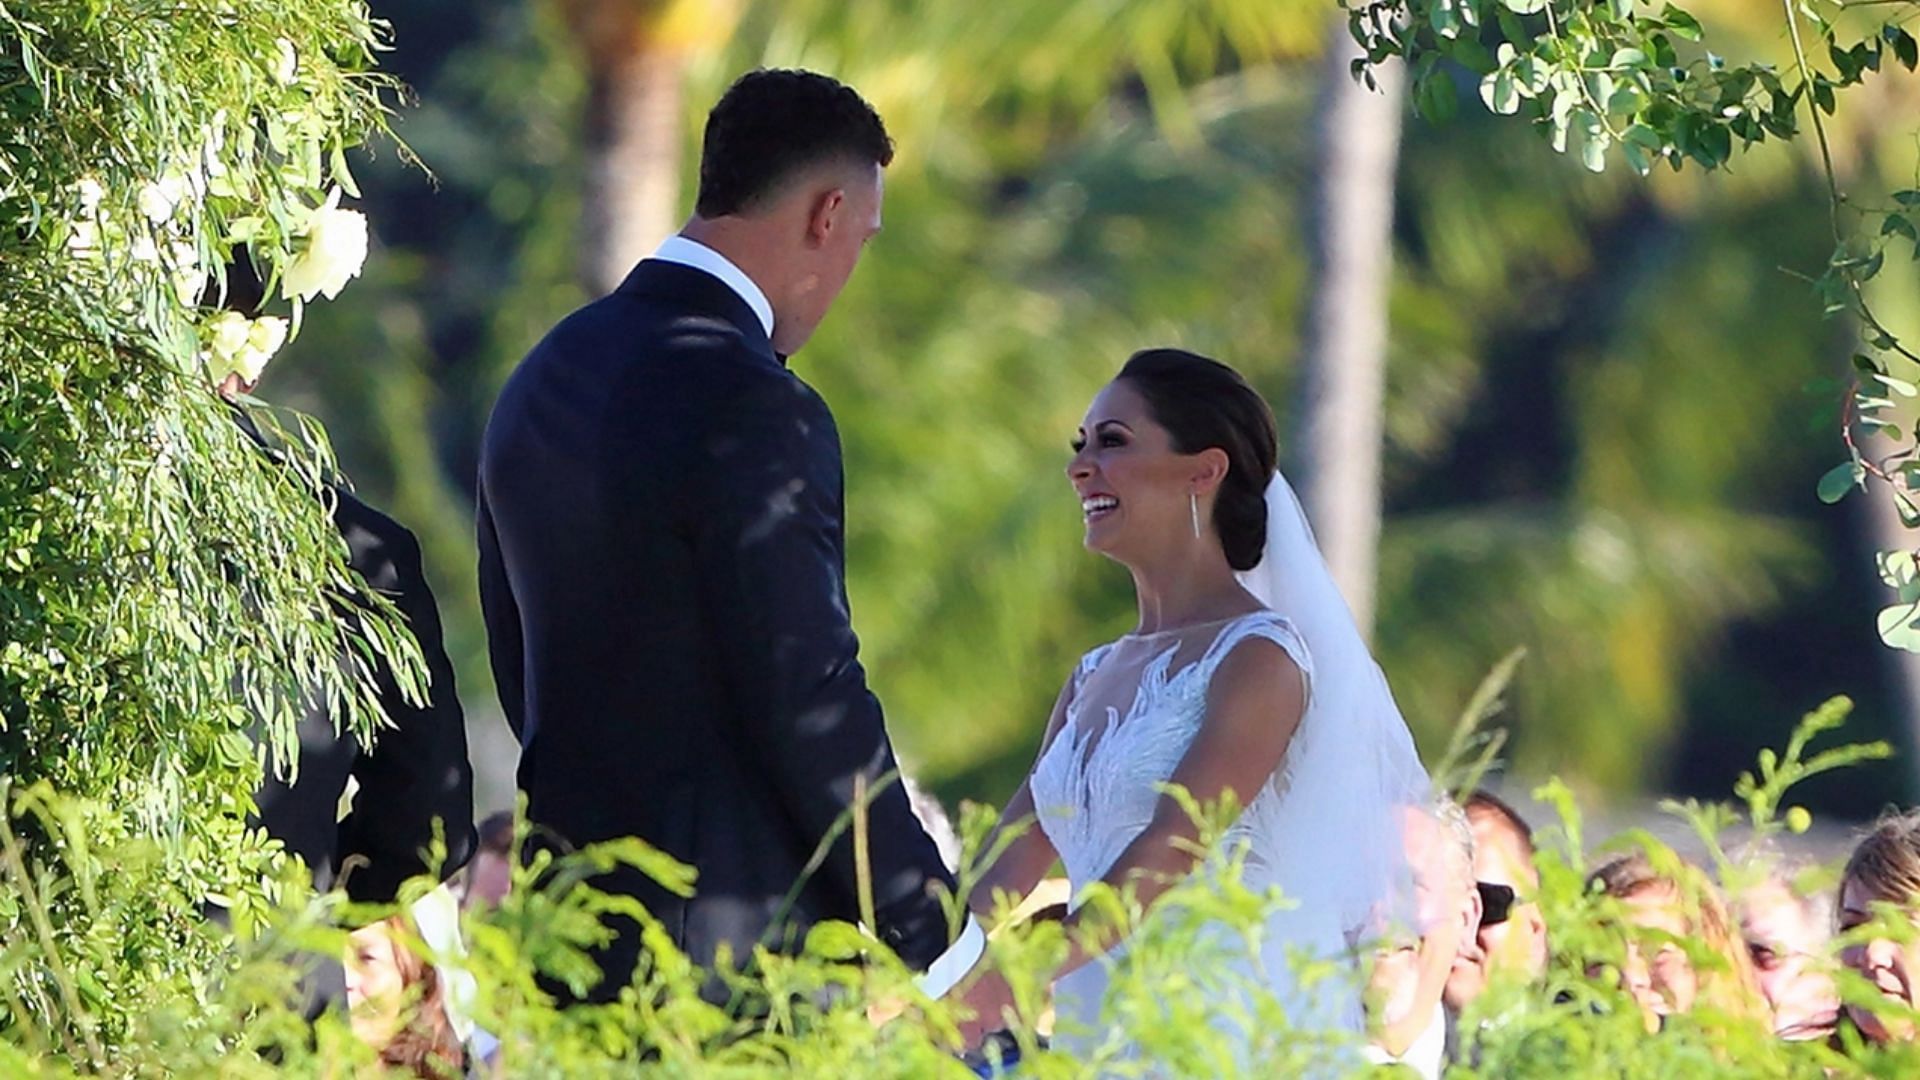 Yankees' Aaron Judge marries Samantha Bracksieck in Hawaii